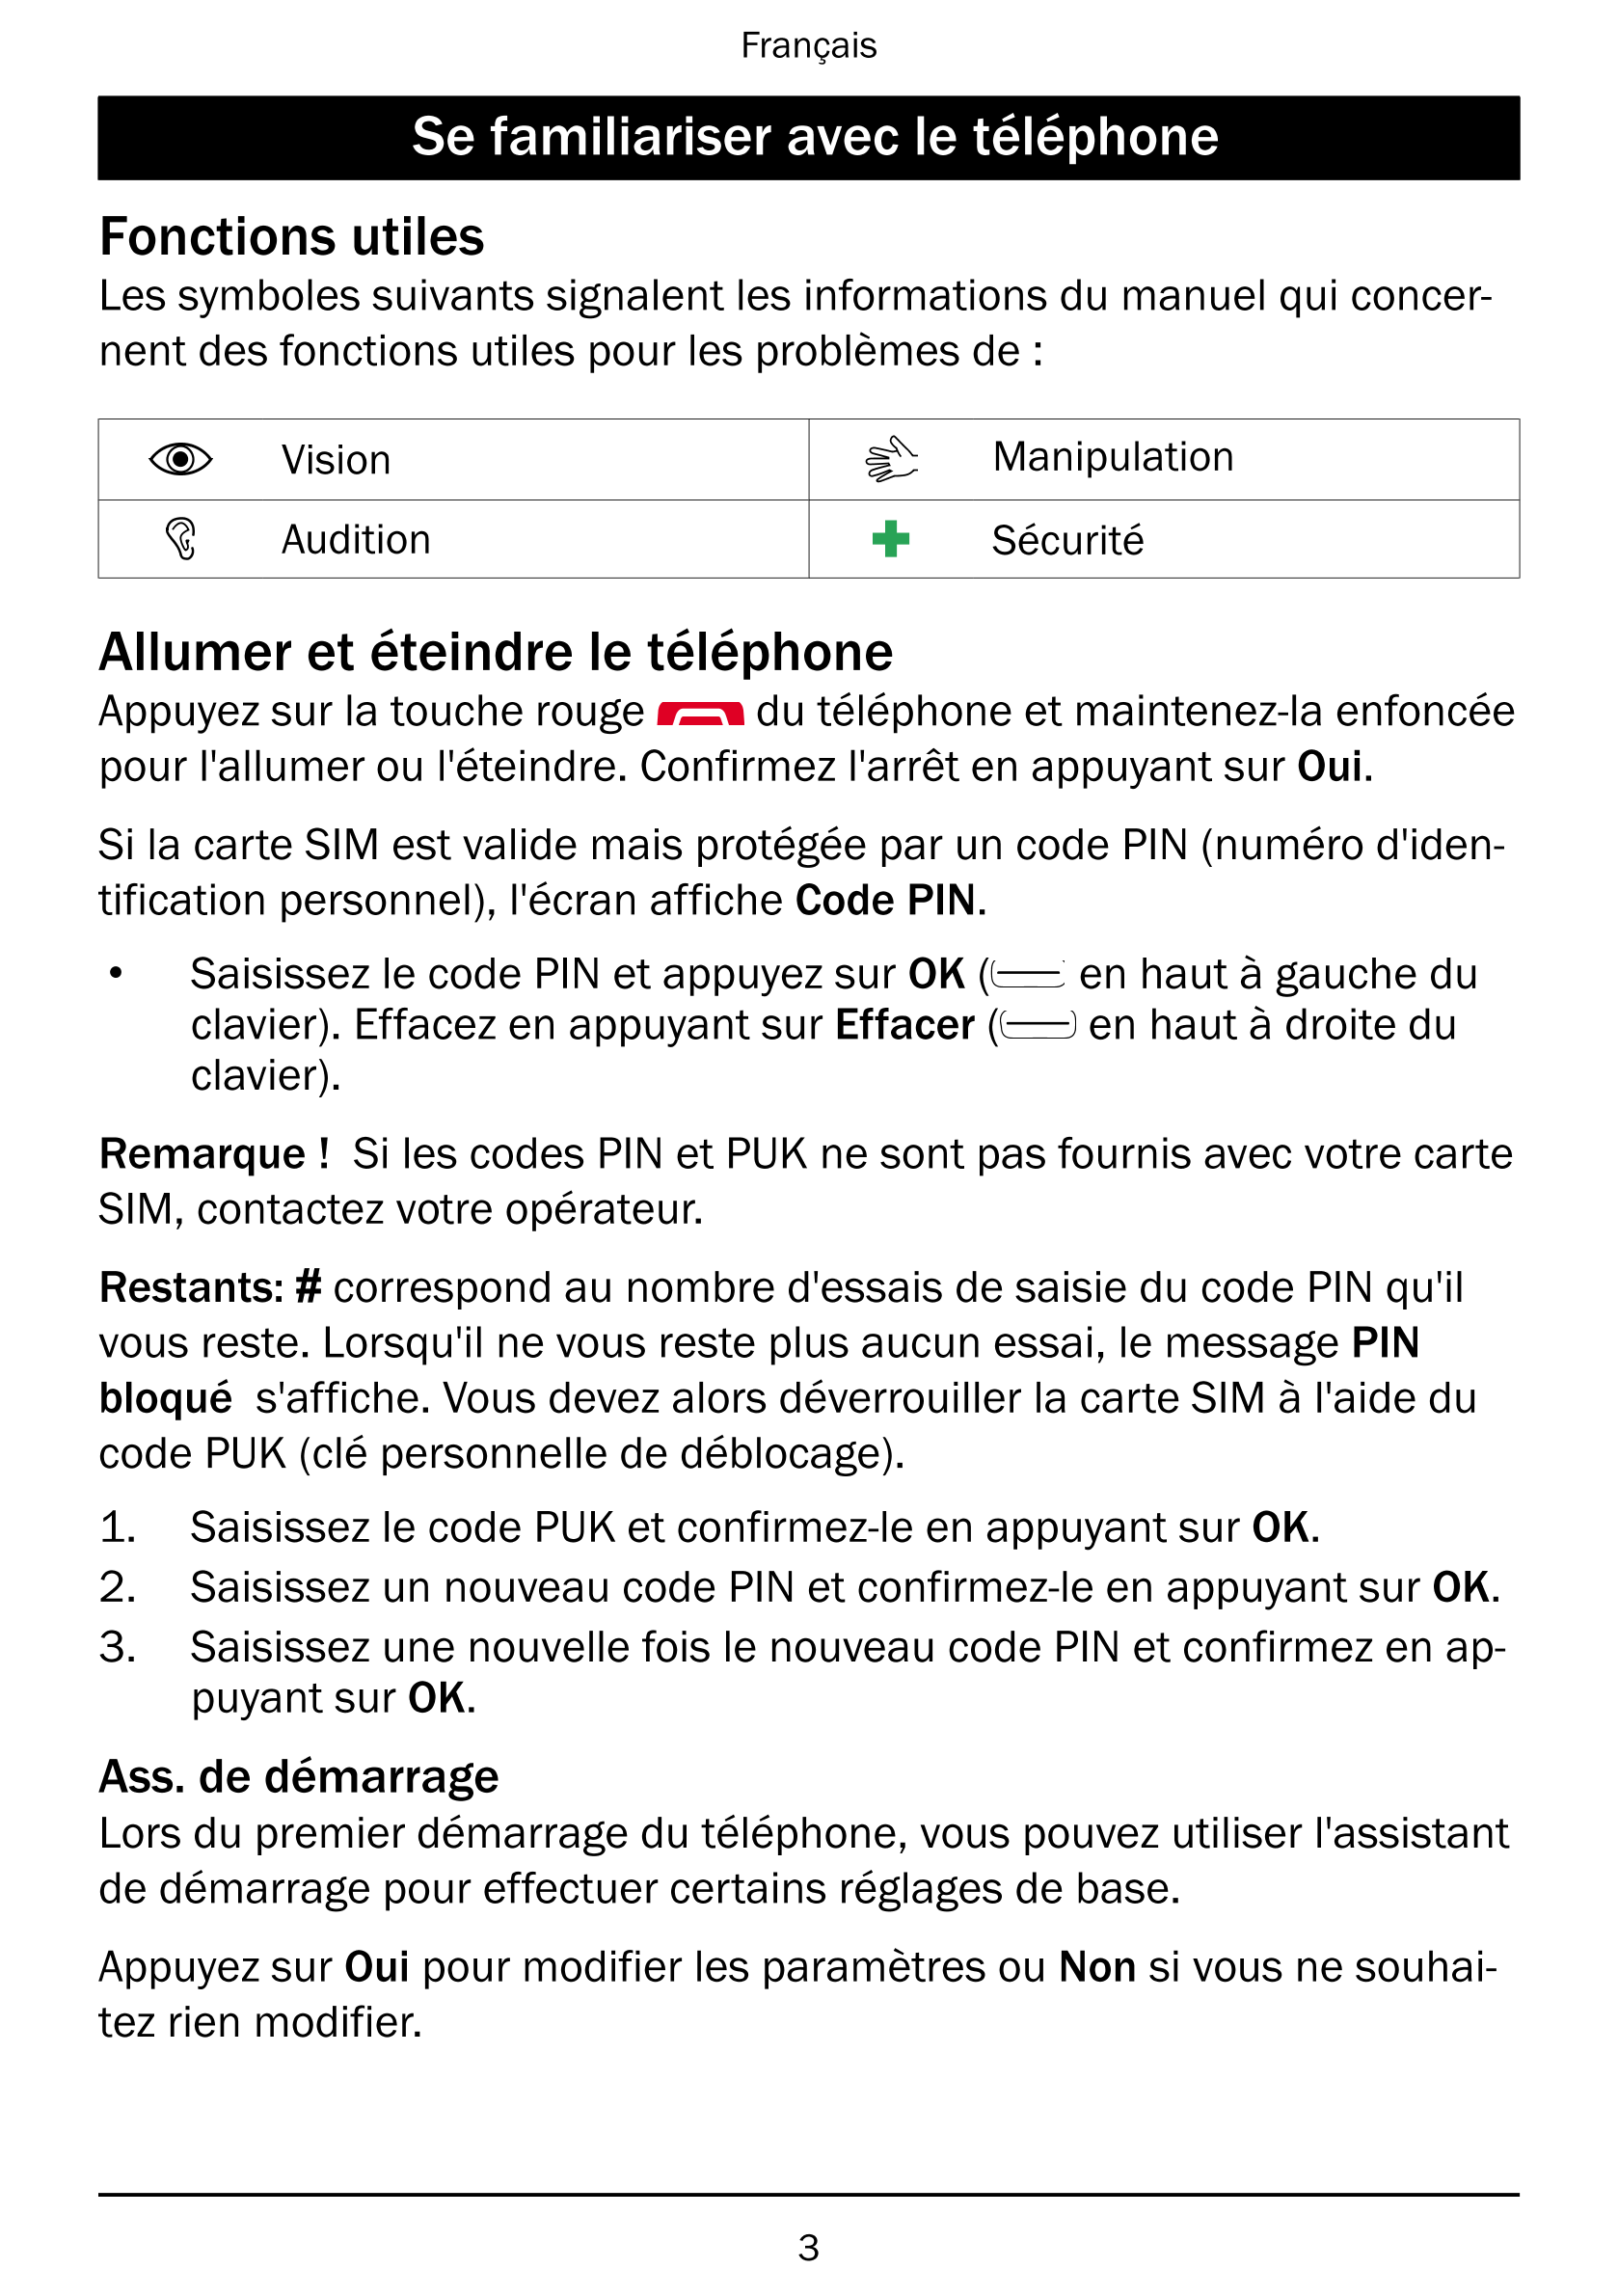 Français
Se familiariser avec le téléphone
Fonctions utiles
Les symboles suivants signalent les informations du manuel qui conce